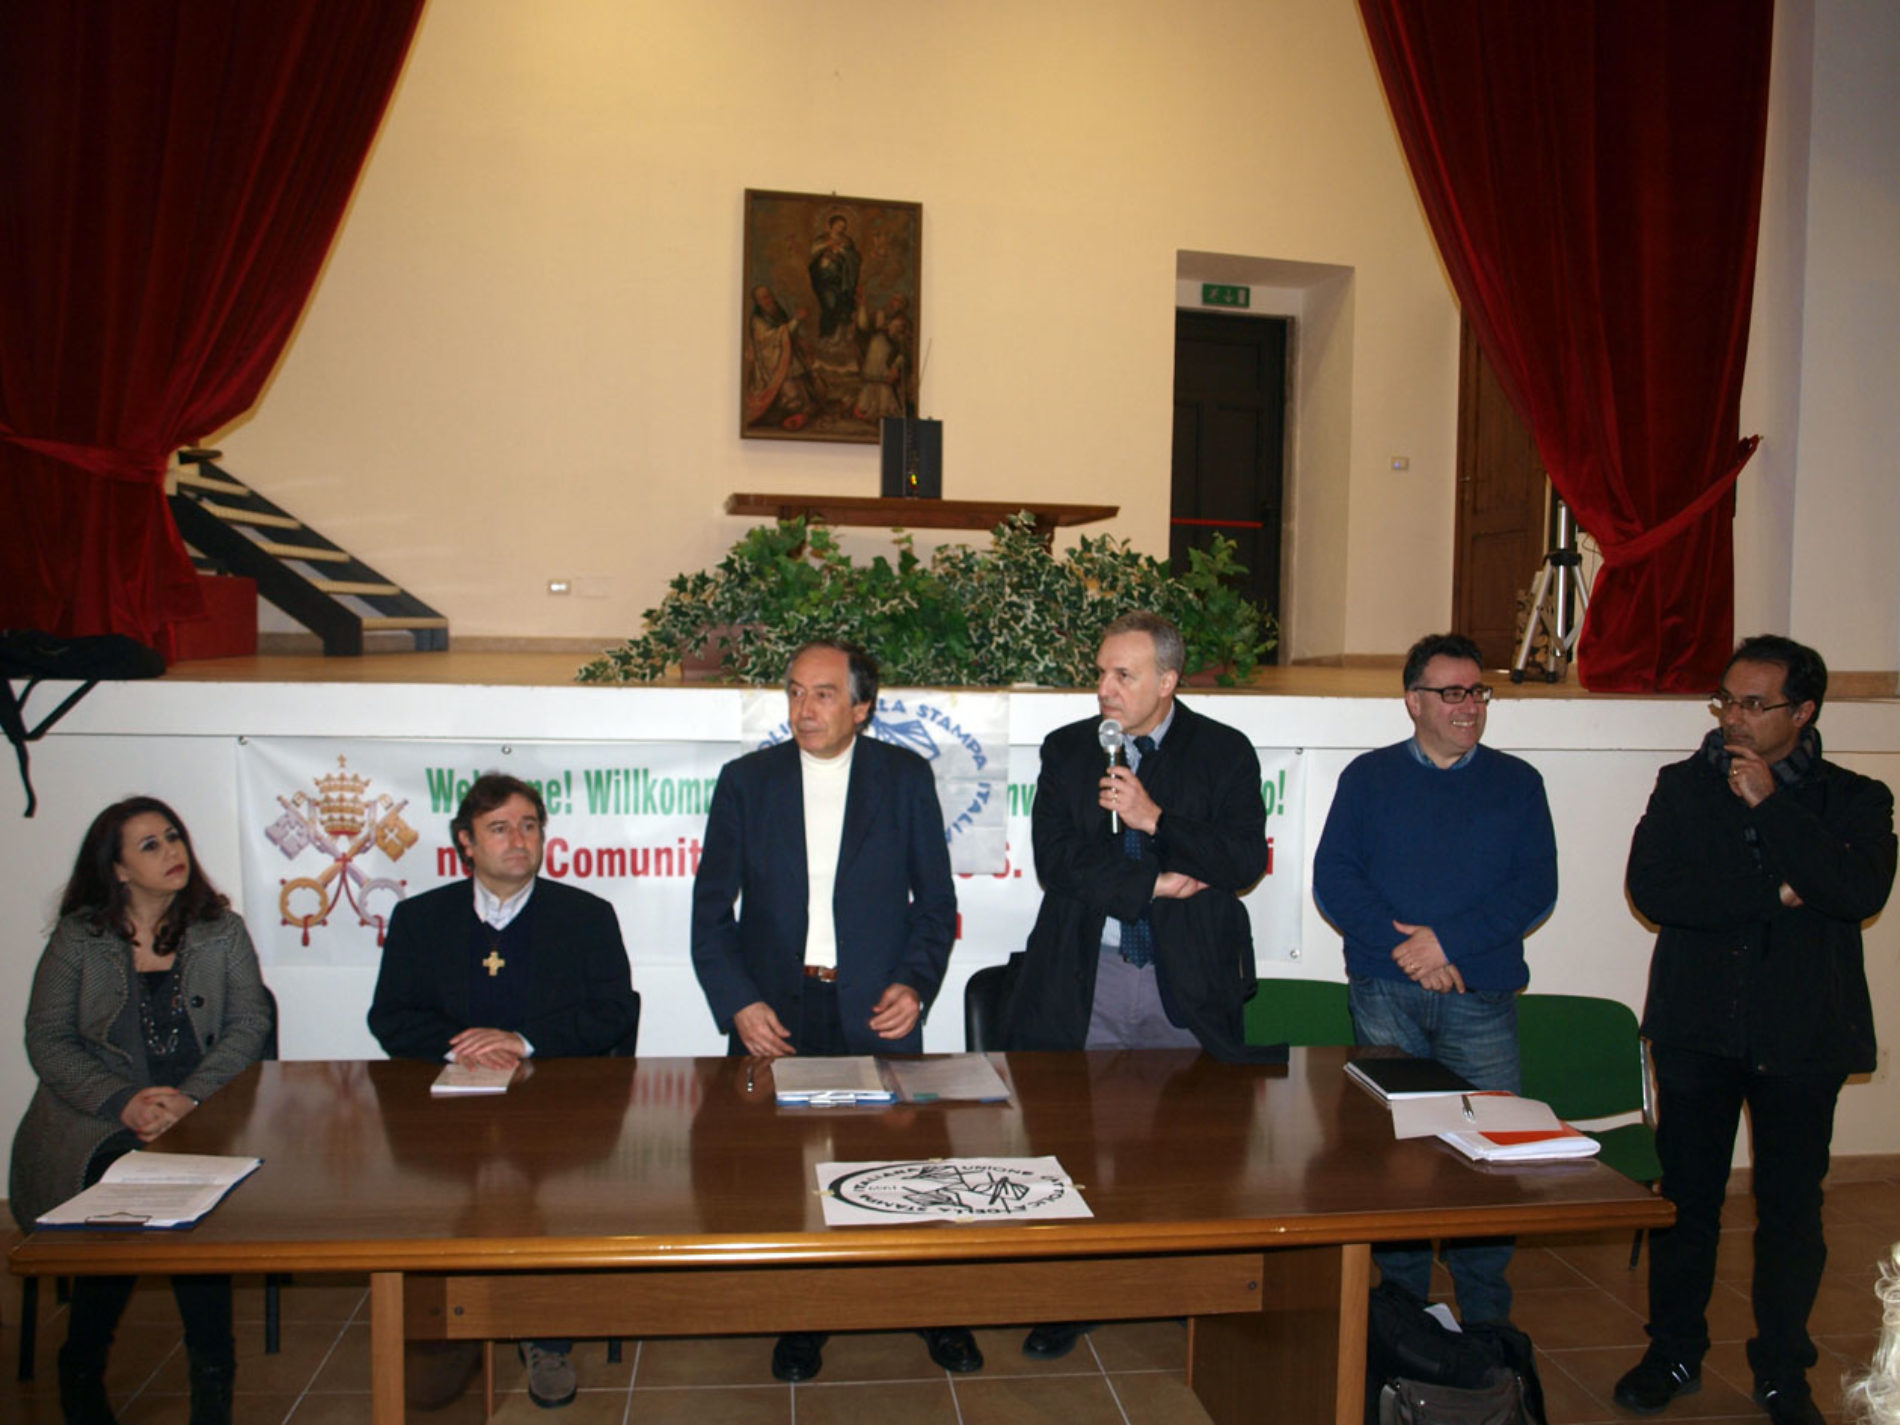 Ucsi Sicilia ha approvato a Taormina il documento finale sui contenuti e il modo di svolgere la professione giornalistica